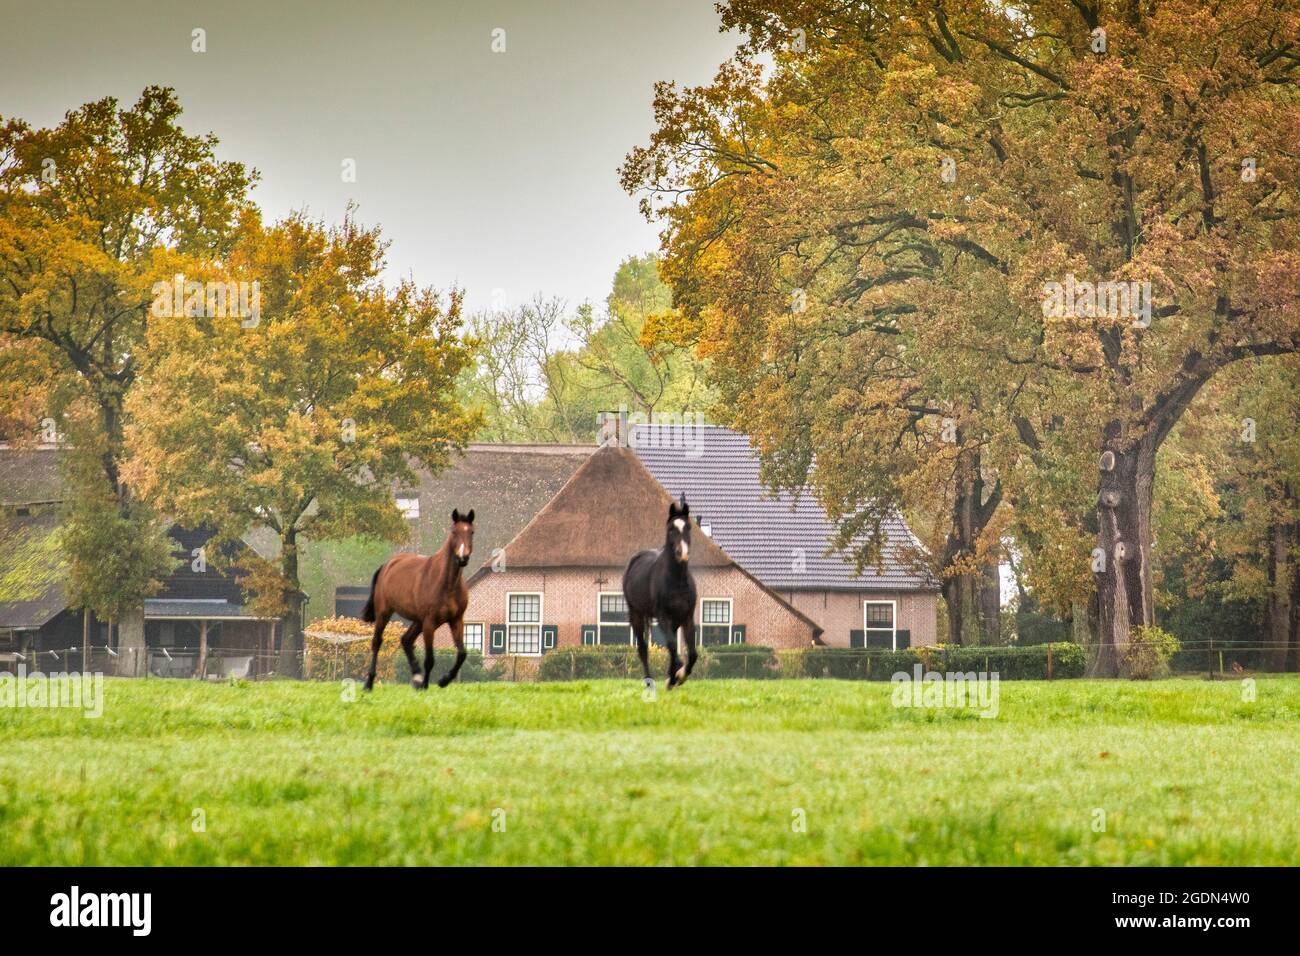 Les pays-Bas, Havelte, chevaux tournant devant une ferme typique. Couleurs d'automne. Banque D'Images